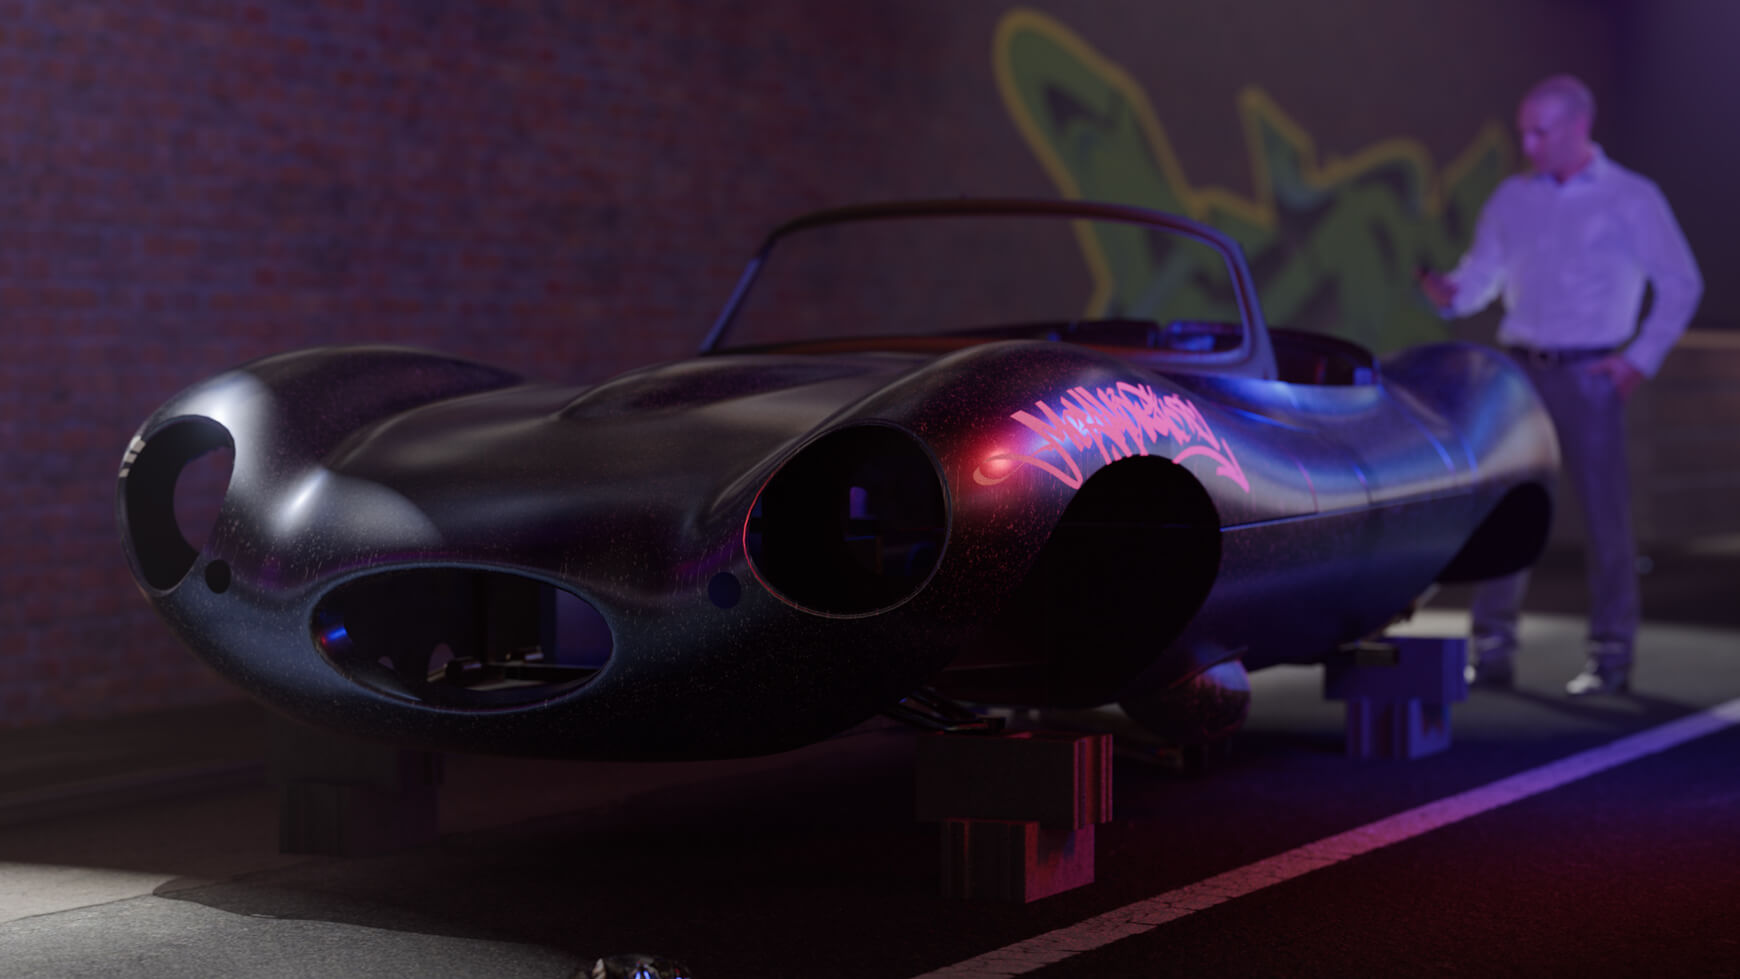 Jaguar 3D Model Cinema 4D Texture Contest